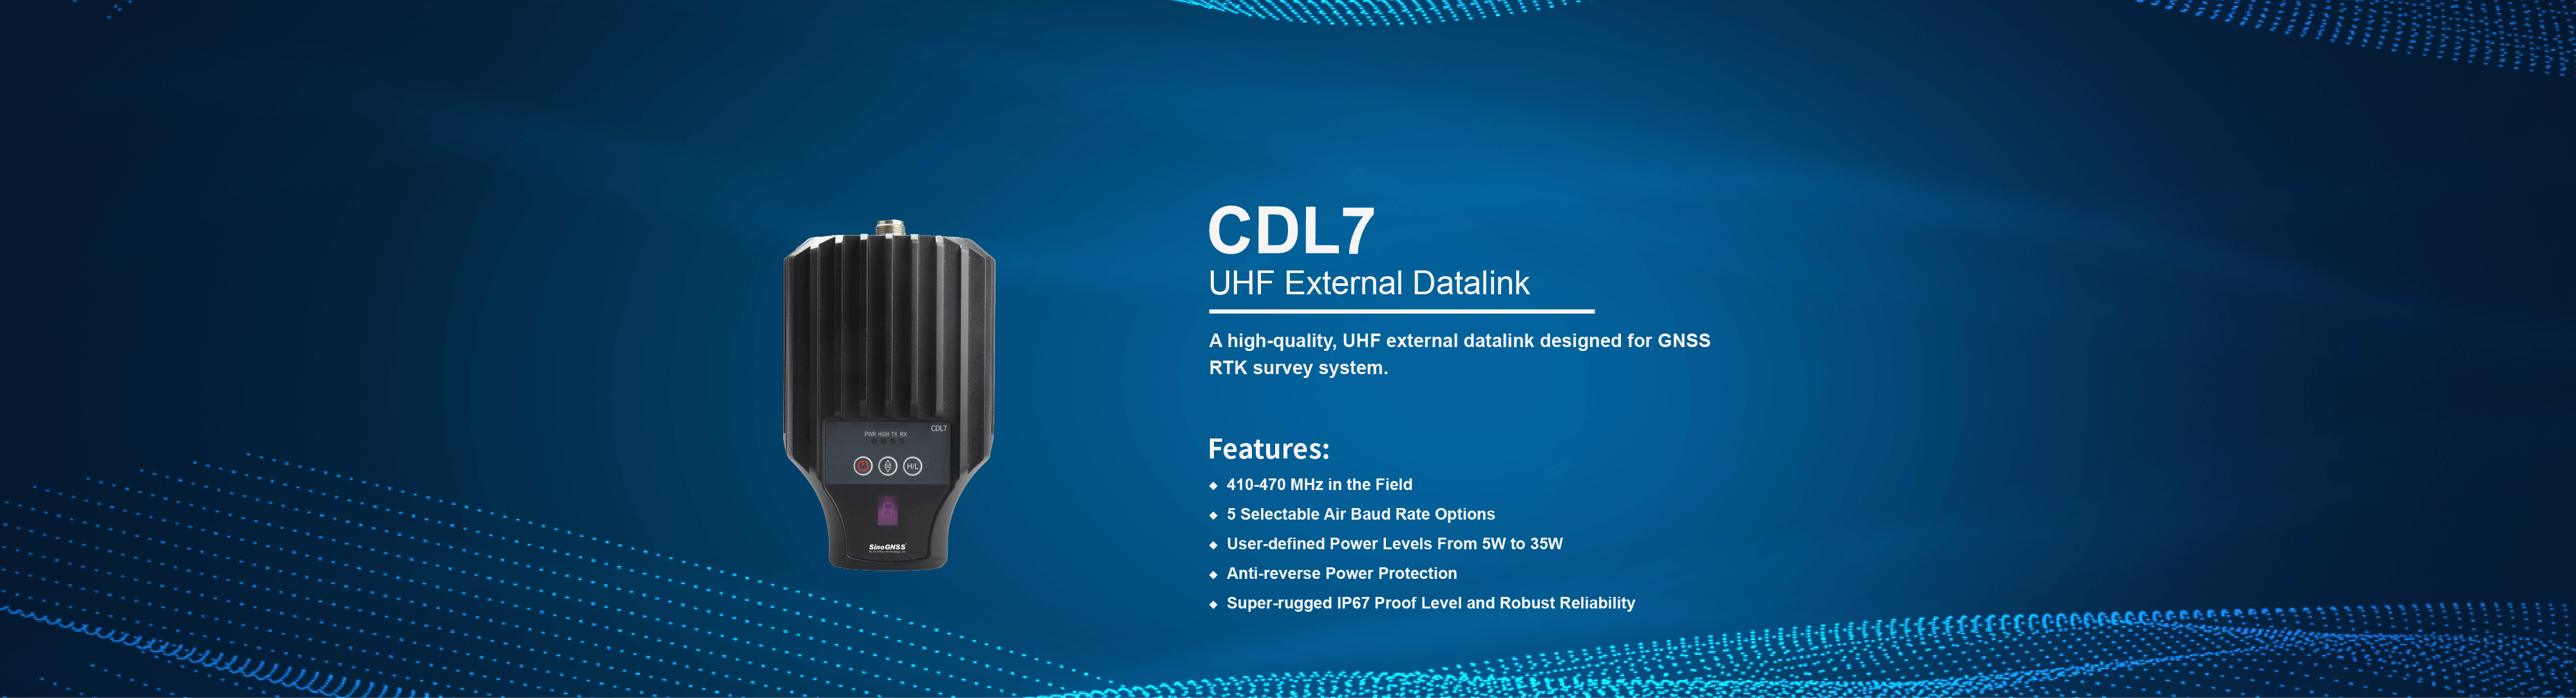 CDL7 UHF External Datalink